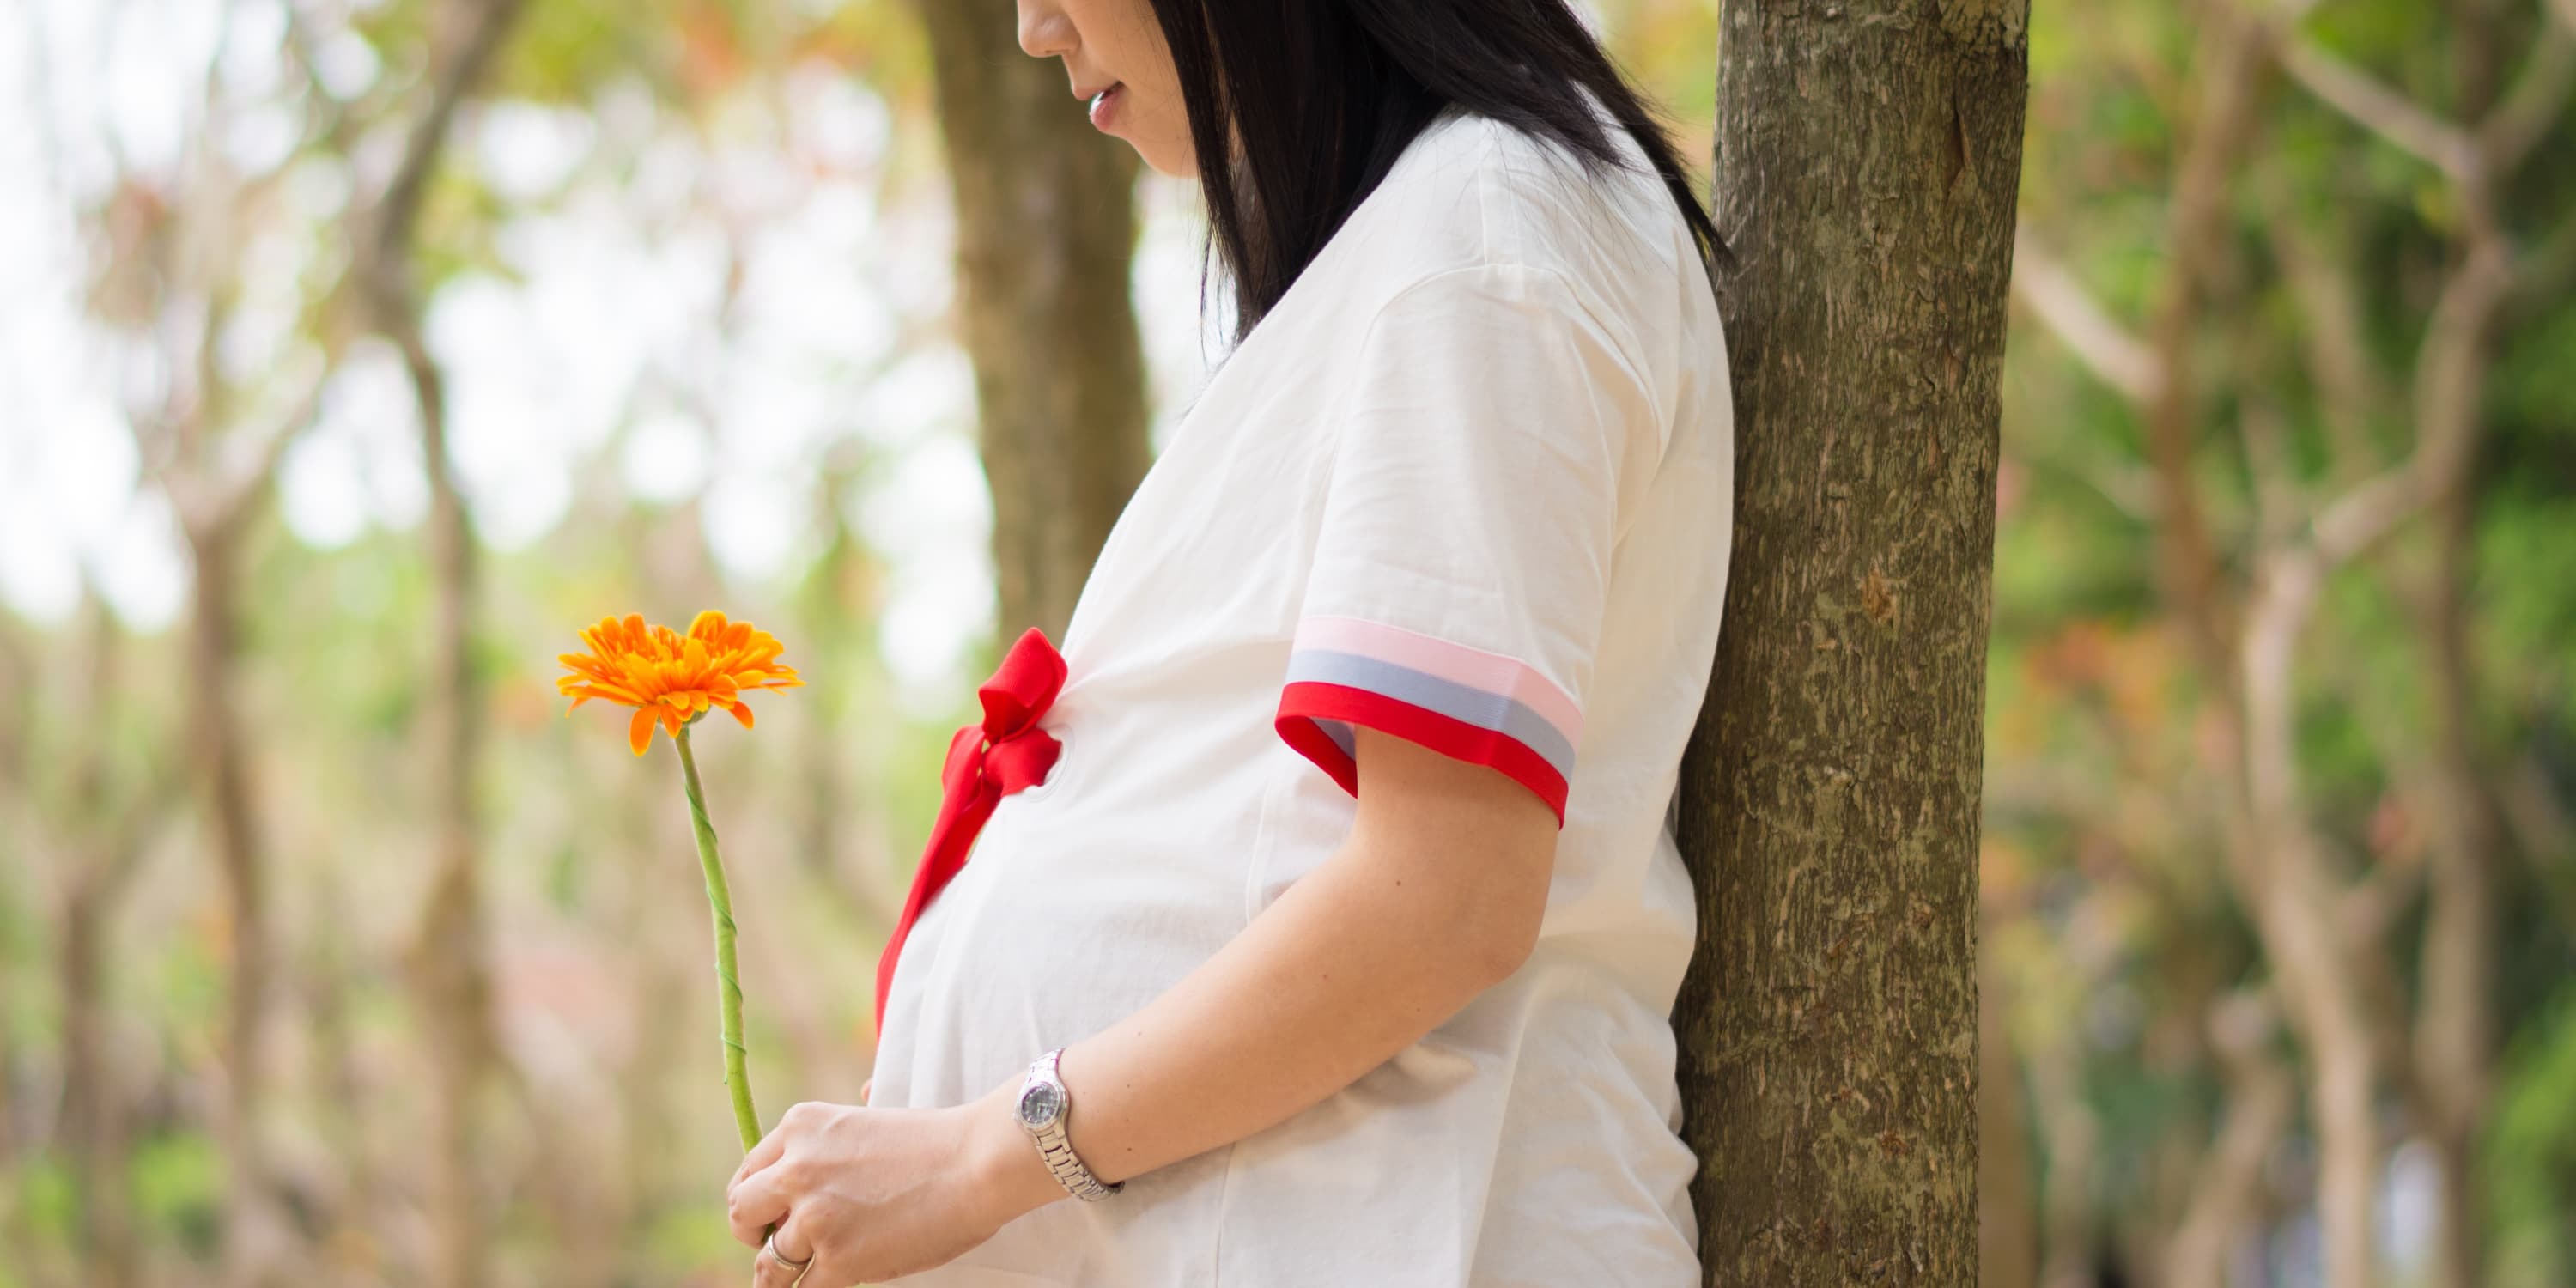 Πλαϊνή άποψη: Έγκυος γυναίκα κάθεται κάτω από ένα δένδρο και κρατάει ένα λουλούδι στα χέρια της